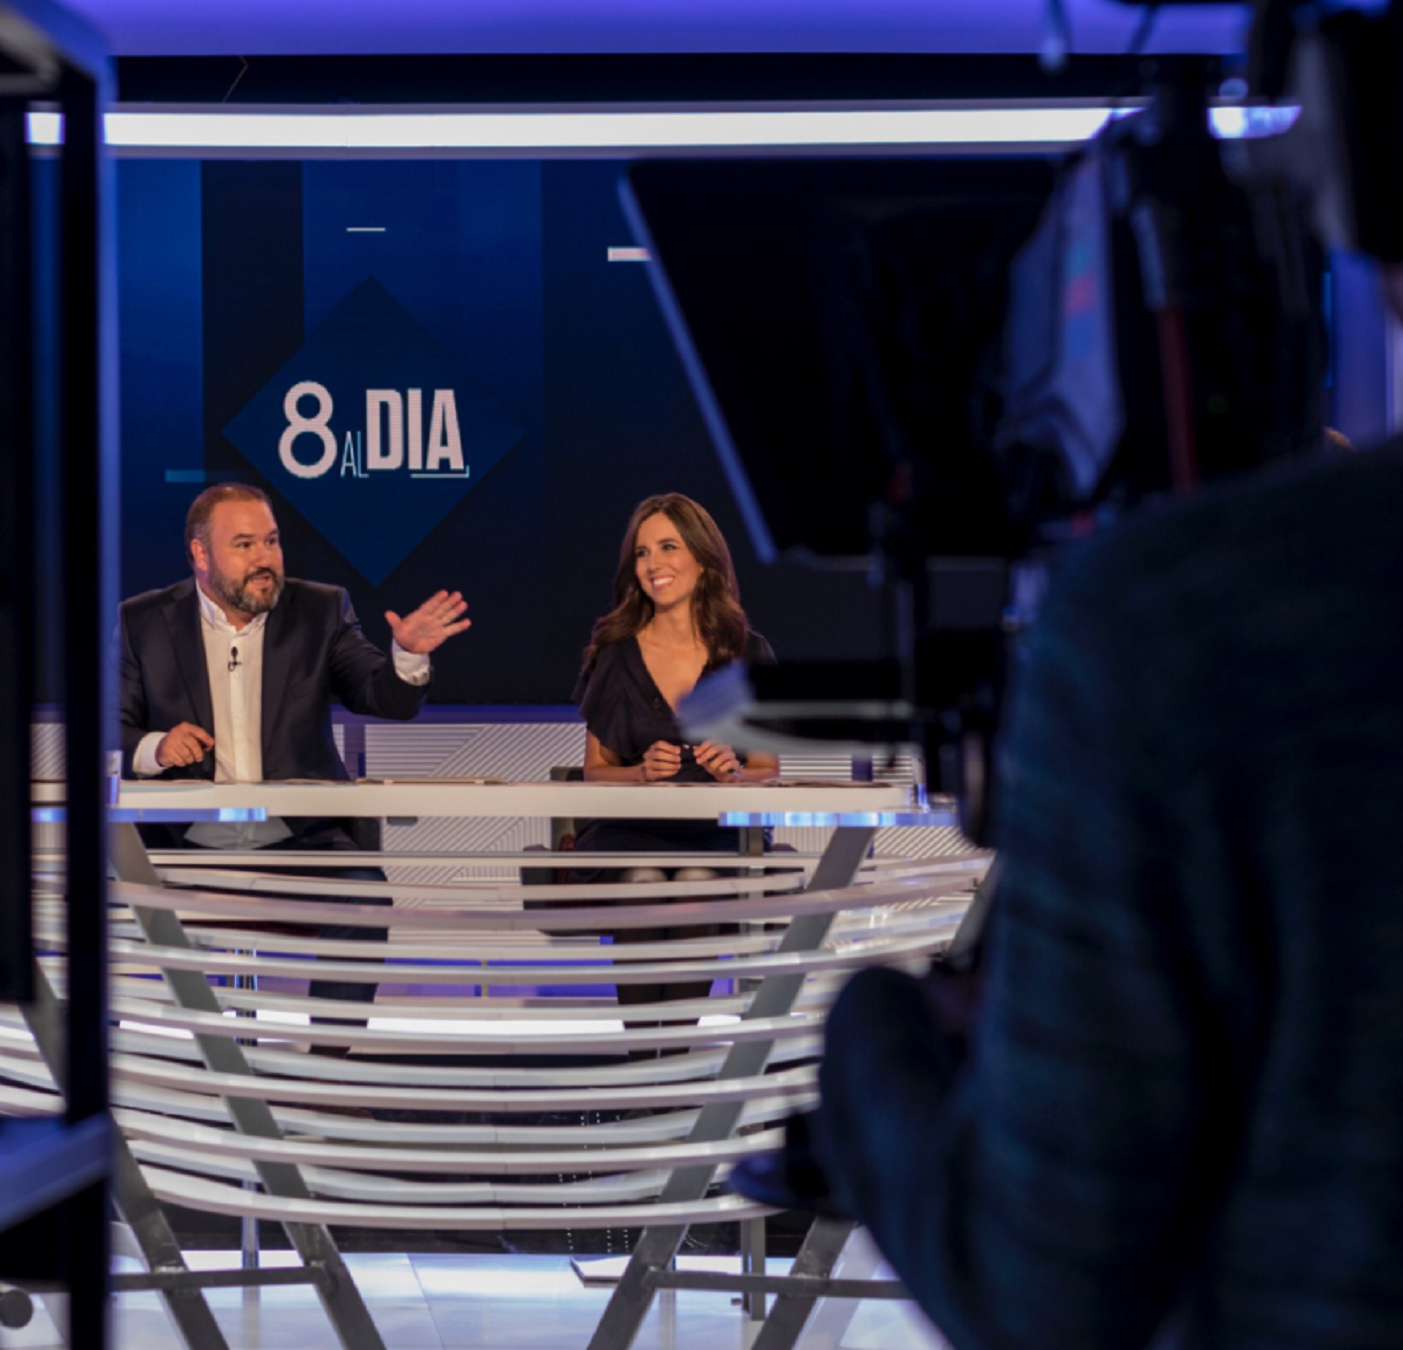 El Madrid ensorra TV3 i dispara "8 al dia"